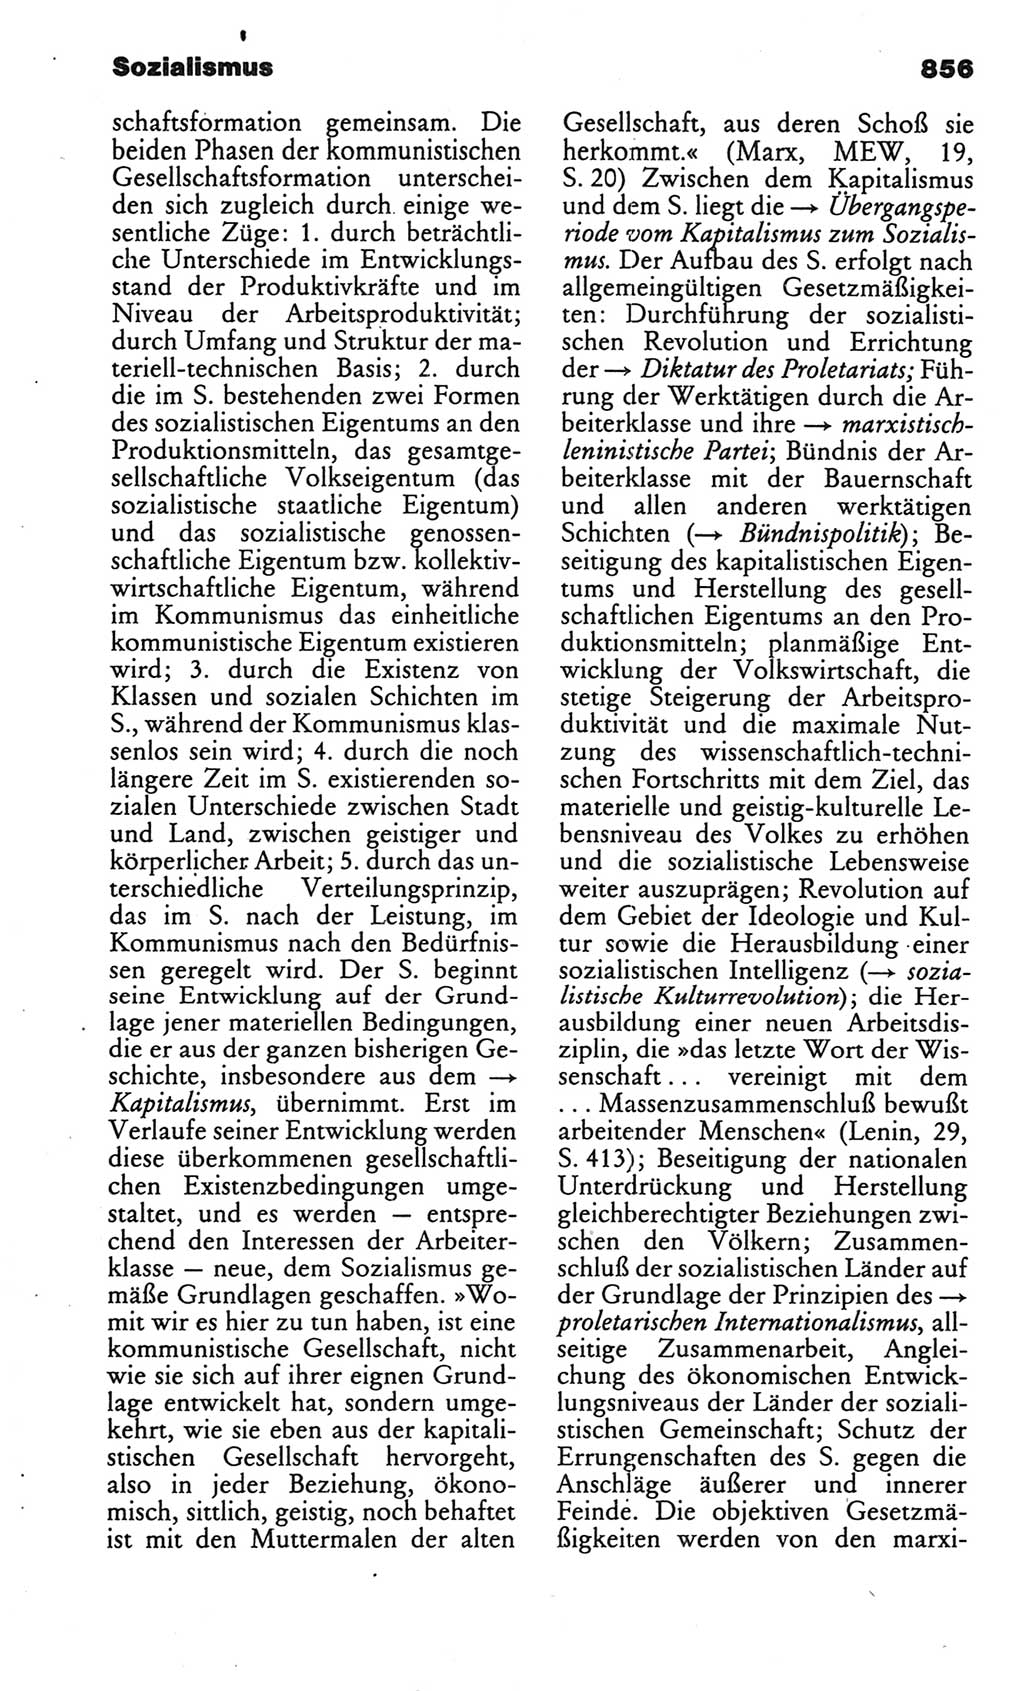 Kleines politisches Wörterbuch [Deutsche Demokratische Republik (DDR)] 1986, Seite 856 (Kl. pol. Wb. DDR 1986, S. 856)